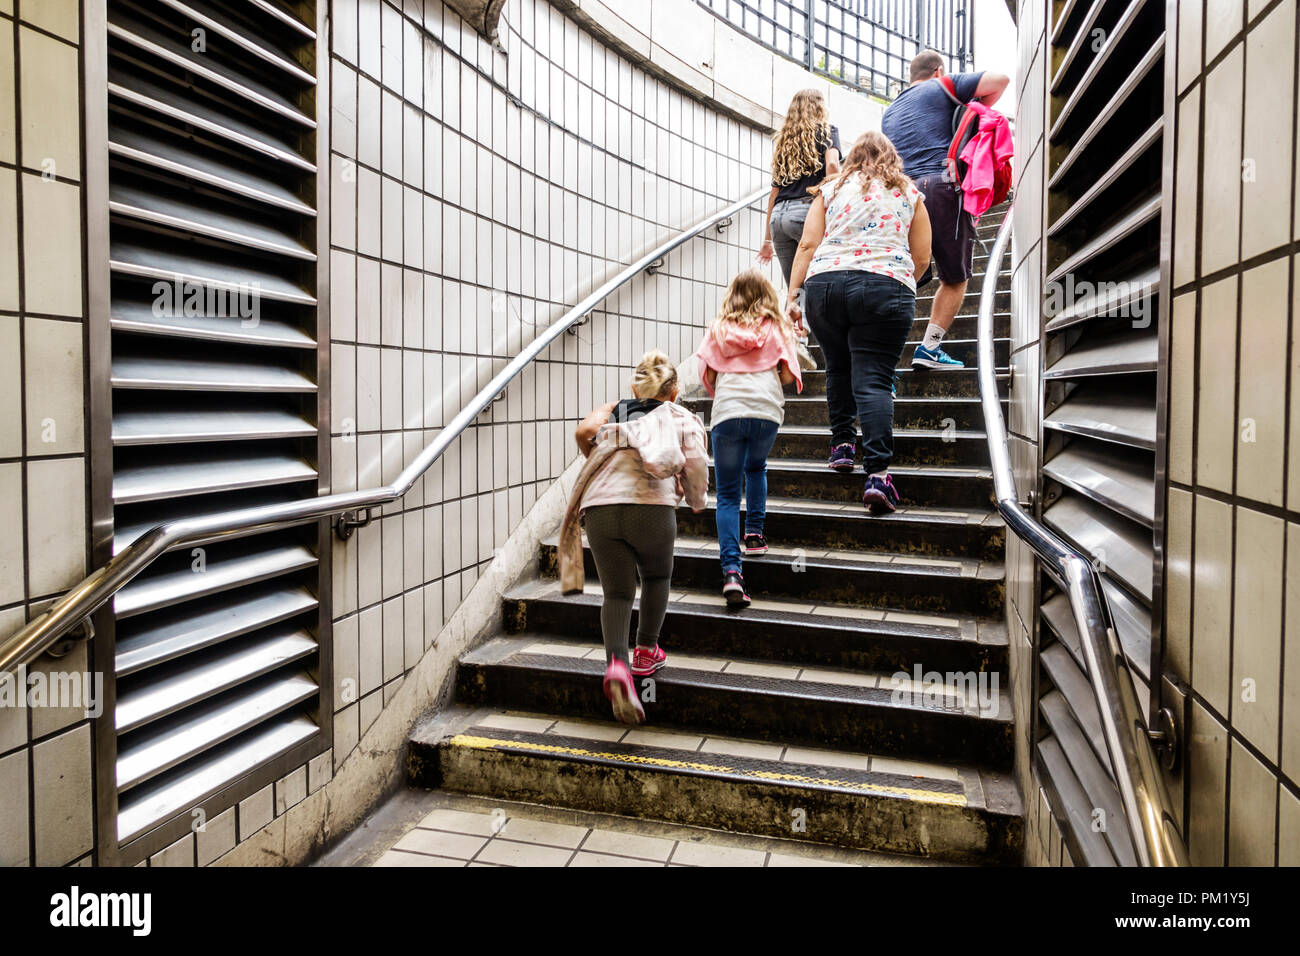 Londres Angleterre,Royaume-Uni,Charing Cross métro Station métro tube métro, sortie, escaliers, femme femmes, filles, enfant enfants enfants enfants jeune Banque D'Images